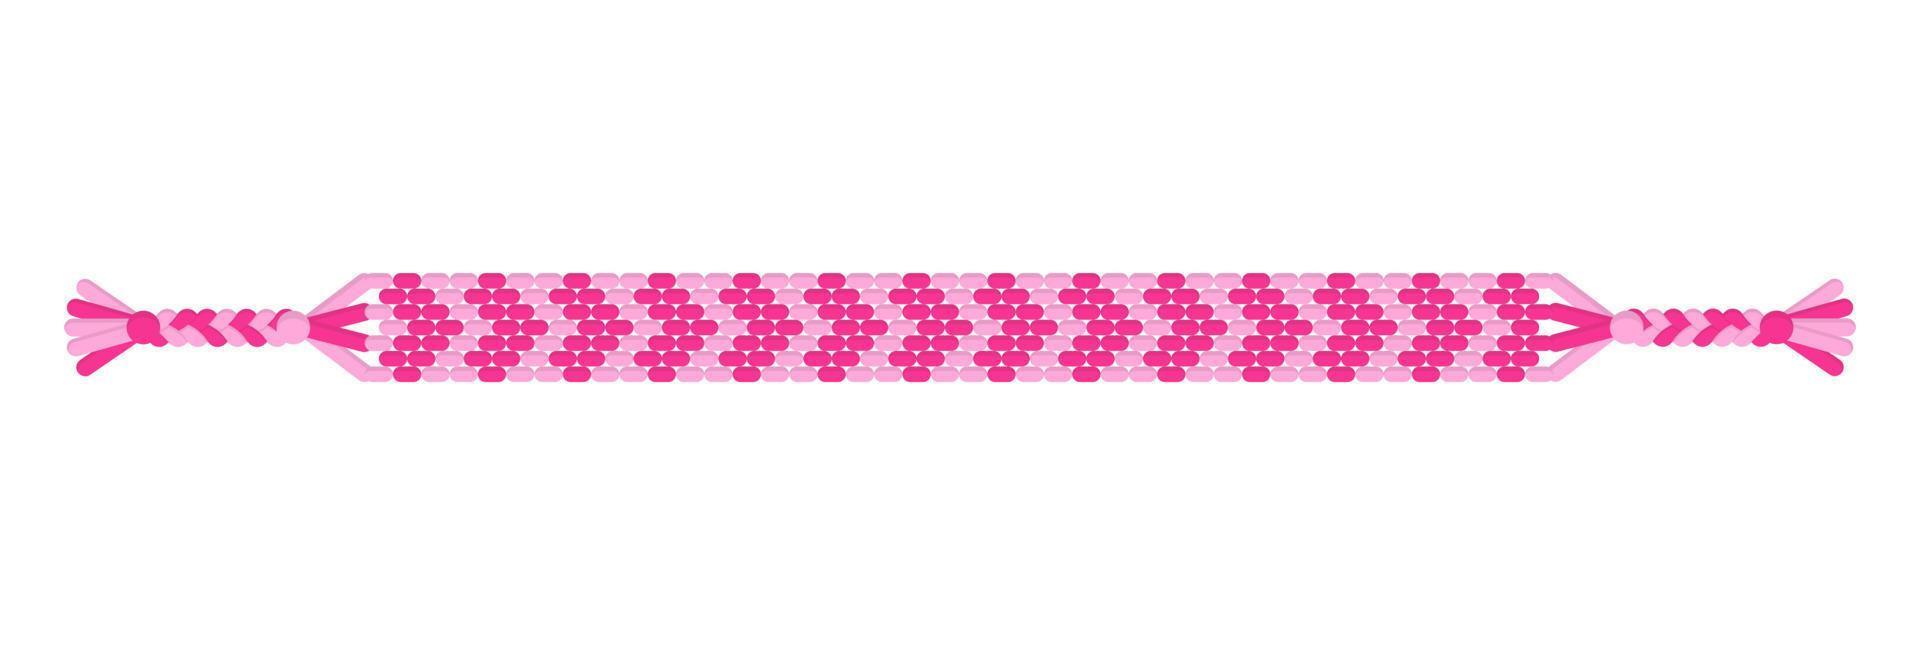 vector amor pulsera de amistad hippie hecha a mano de hilos rosados.